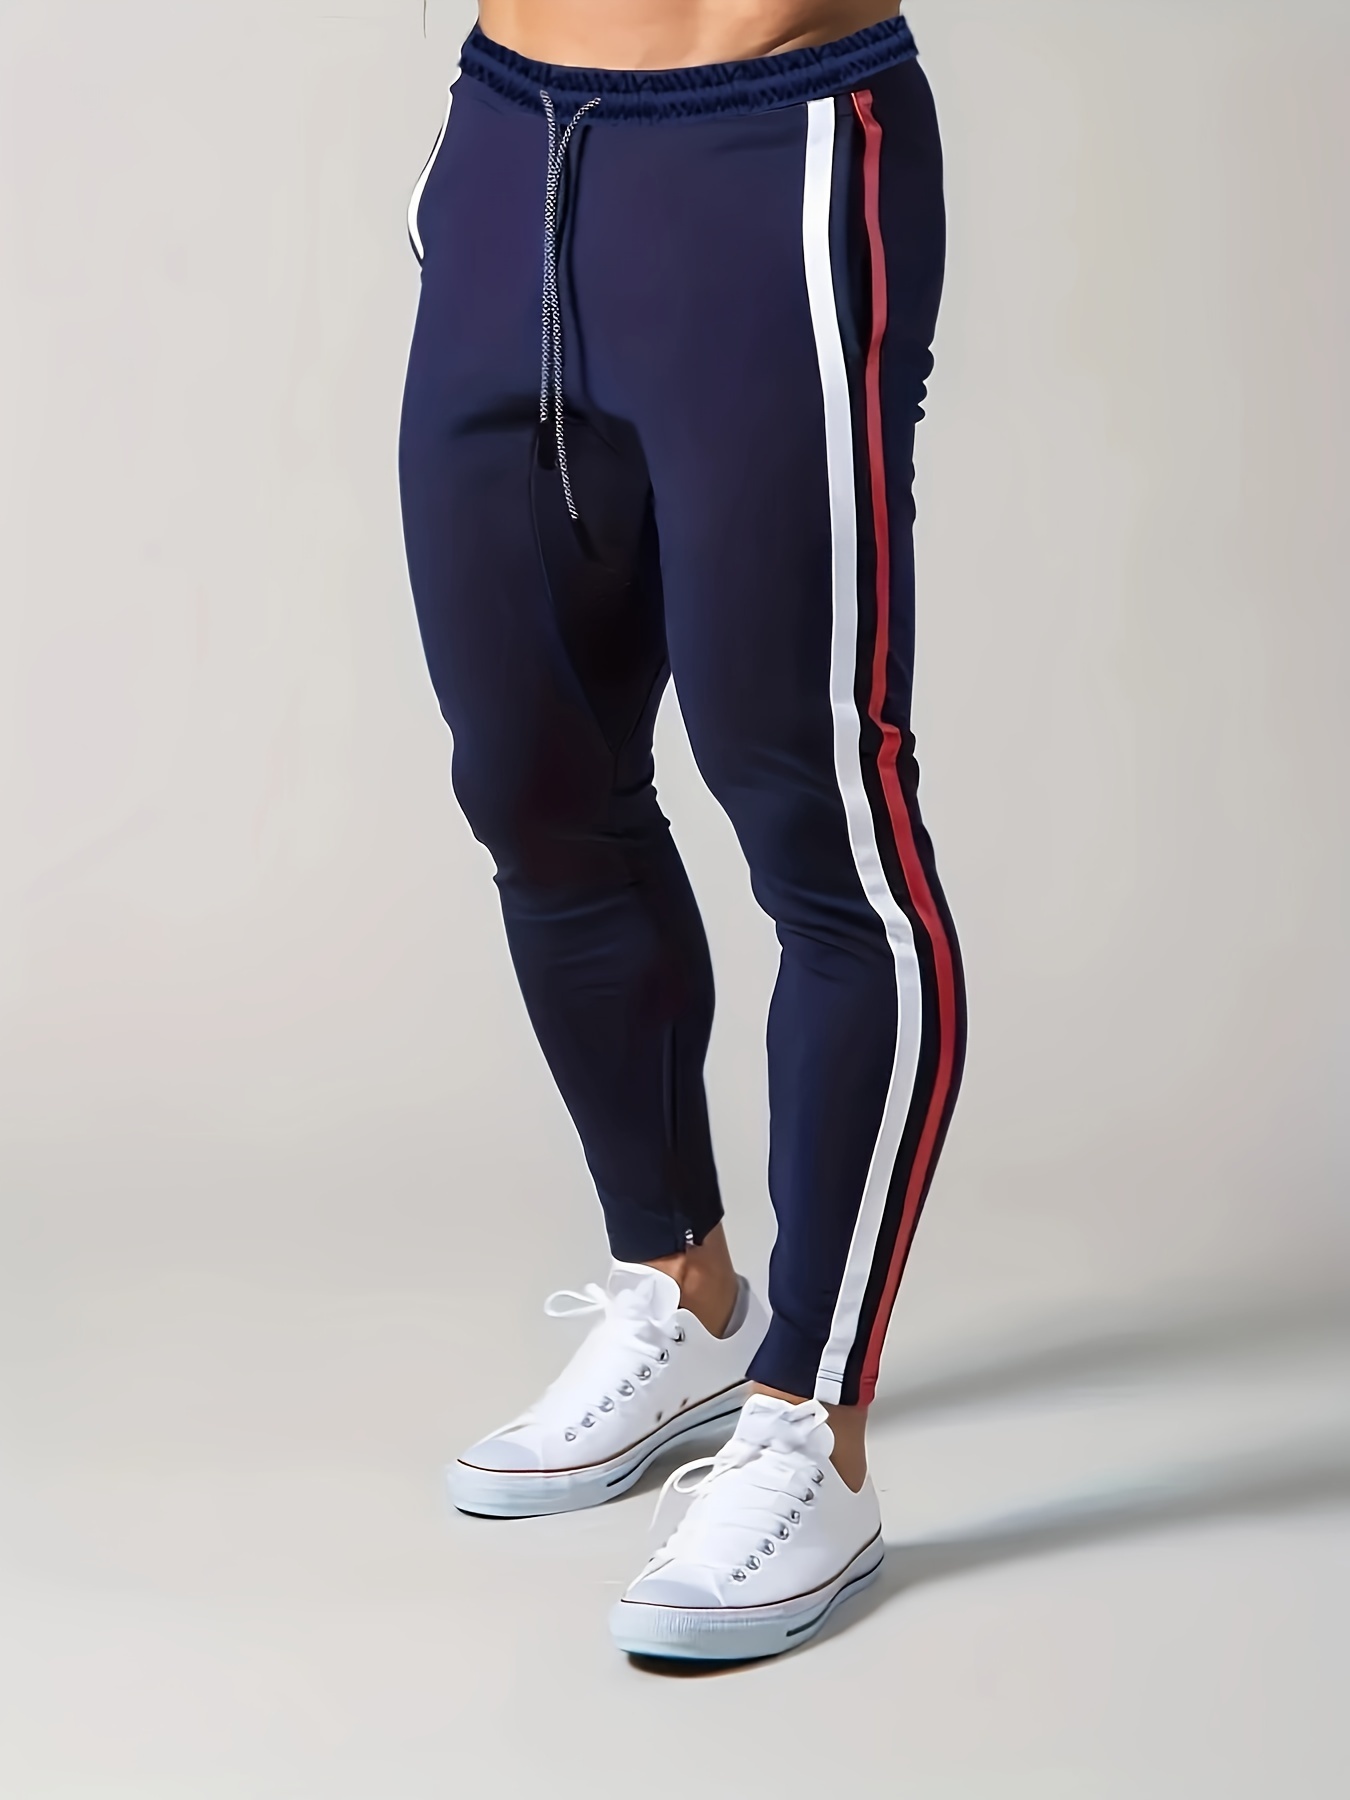 Pantalones deportivos de compresión para hombre, mallas de entrenamiento,  pantalones de capa base para correr, entrenamiento de gimnasia, jogging